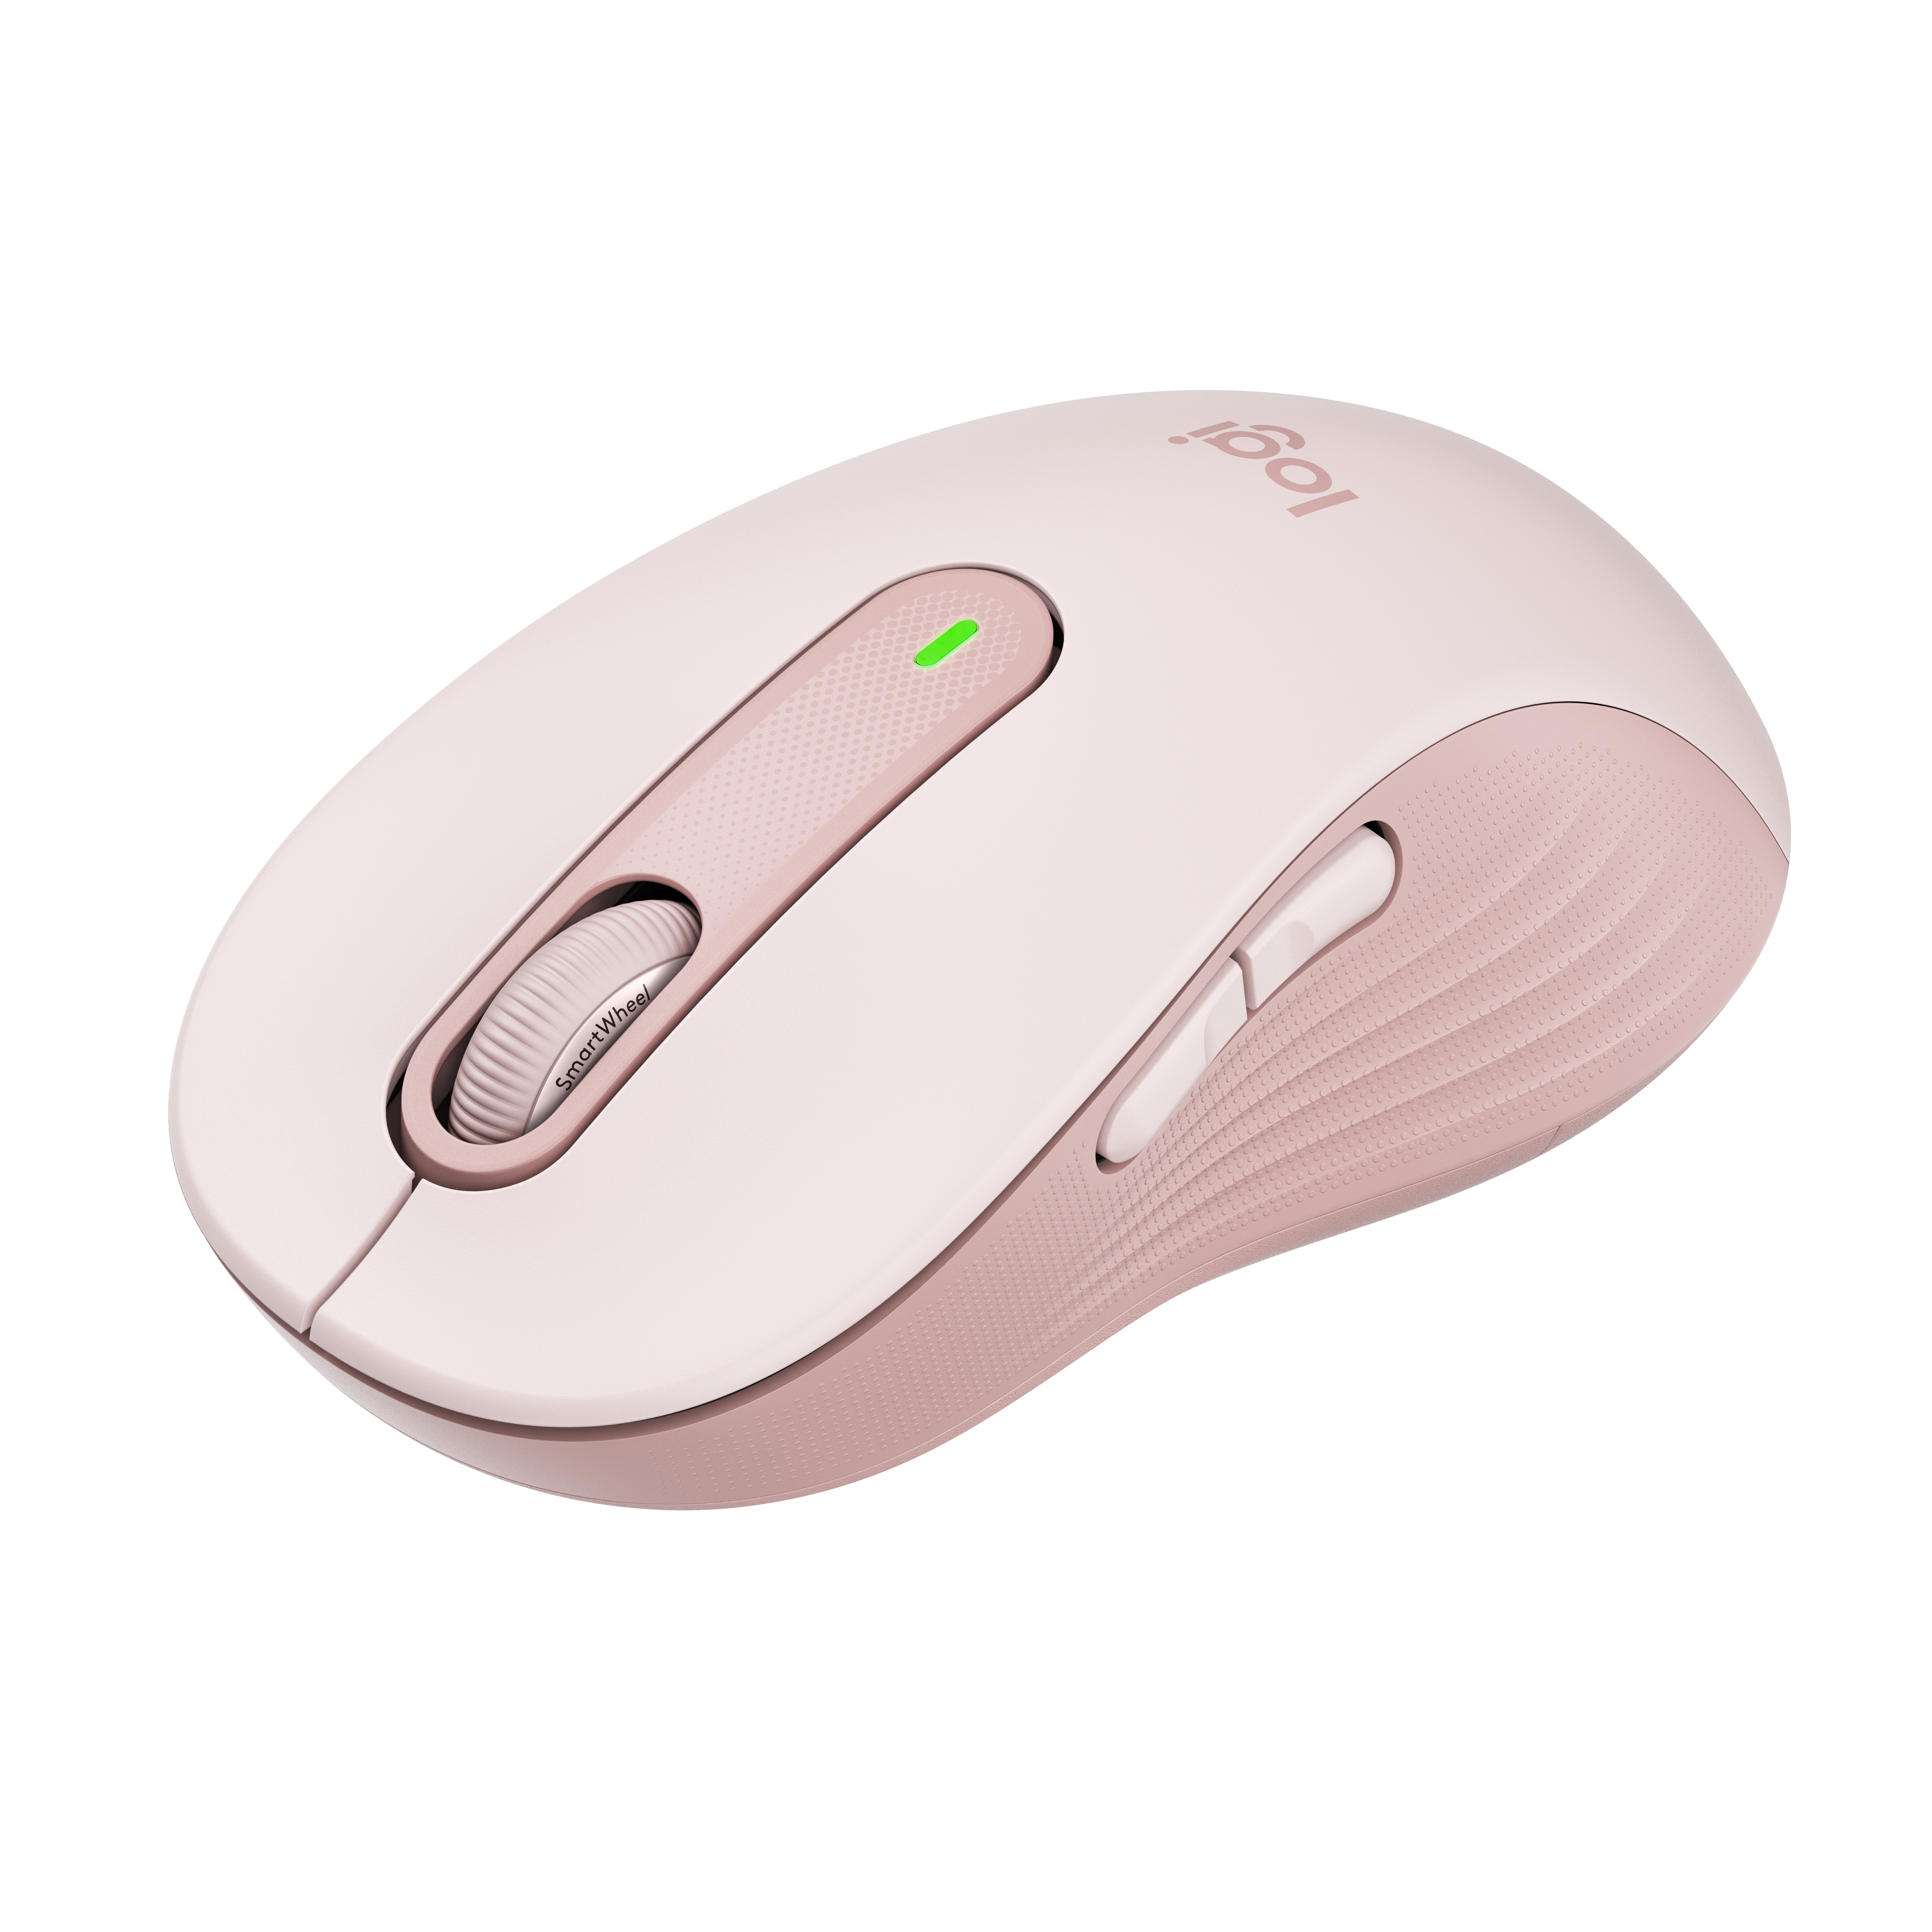 Logitech presenta el ratón Signature M650 con distintos tamaños y una opción avanzada para zurdos